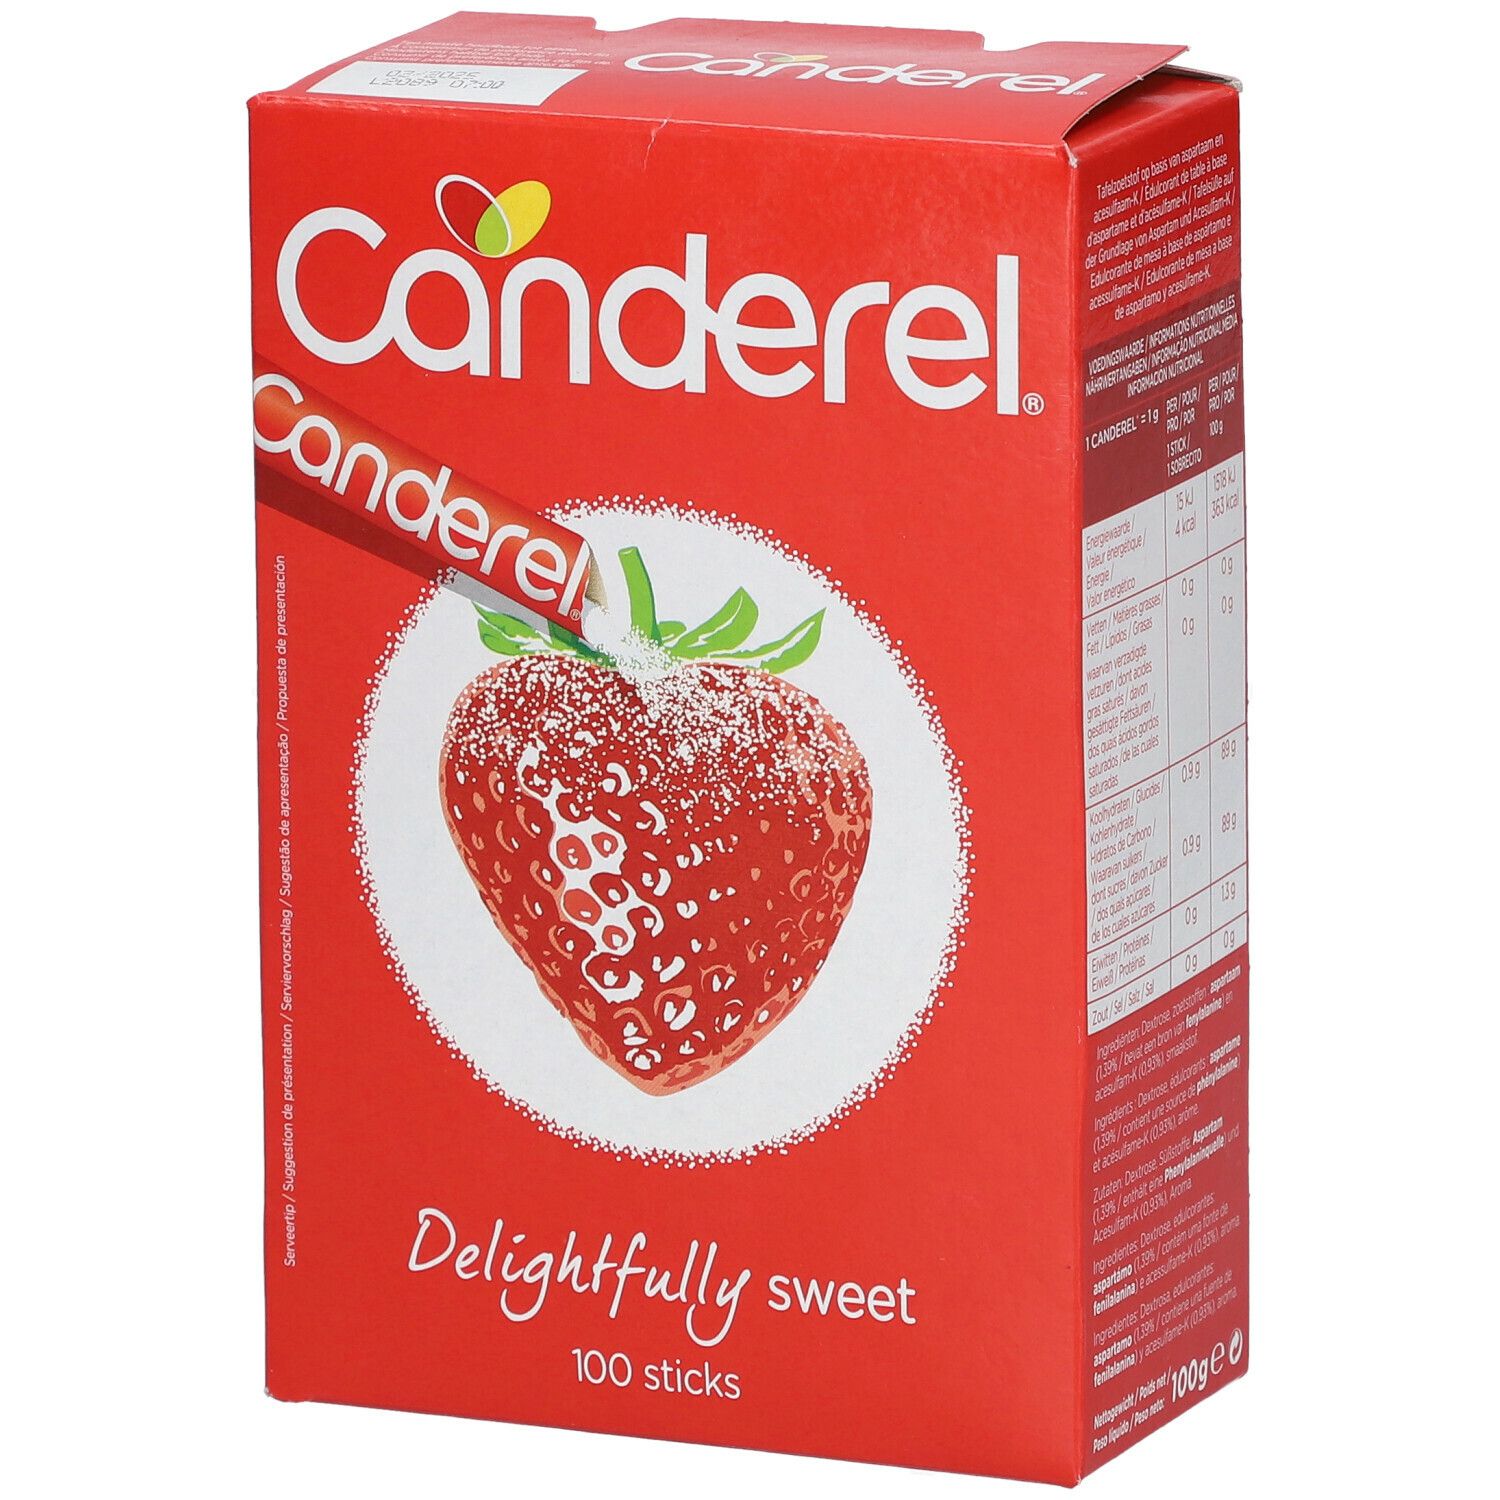 Image of Canderel® Sticks